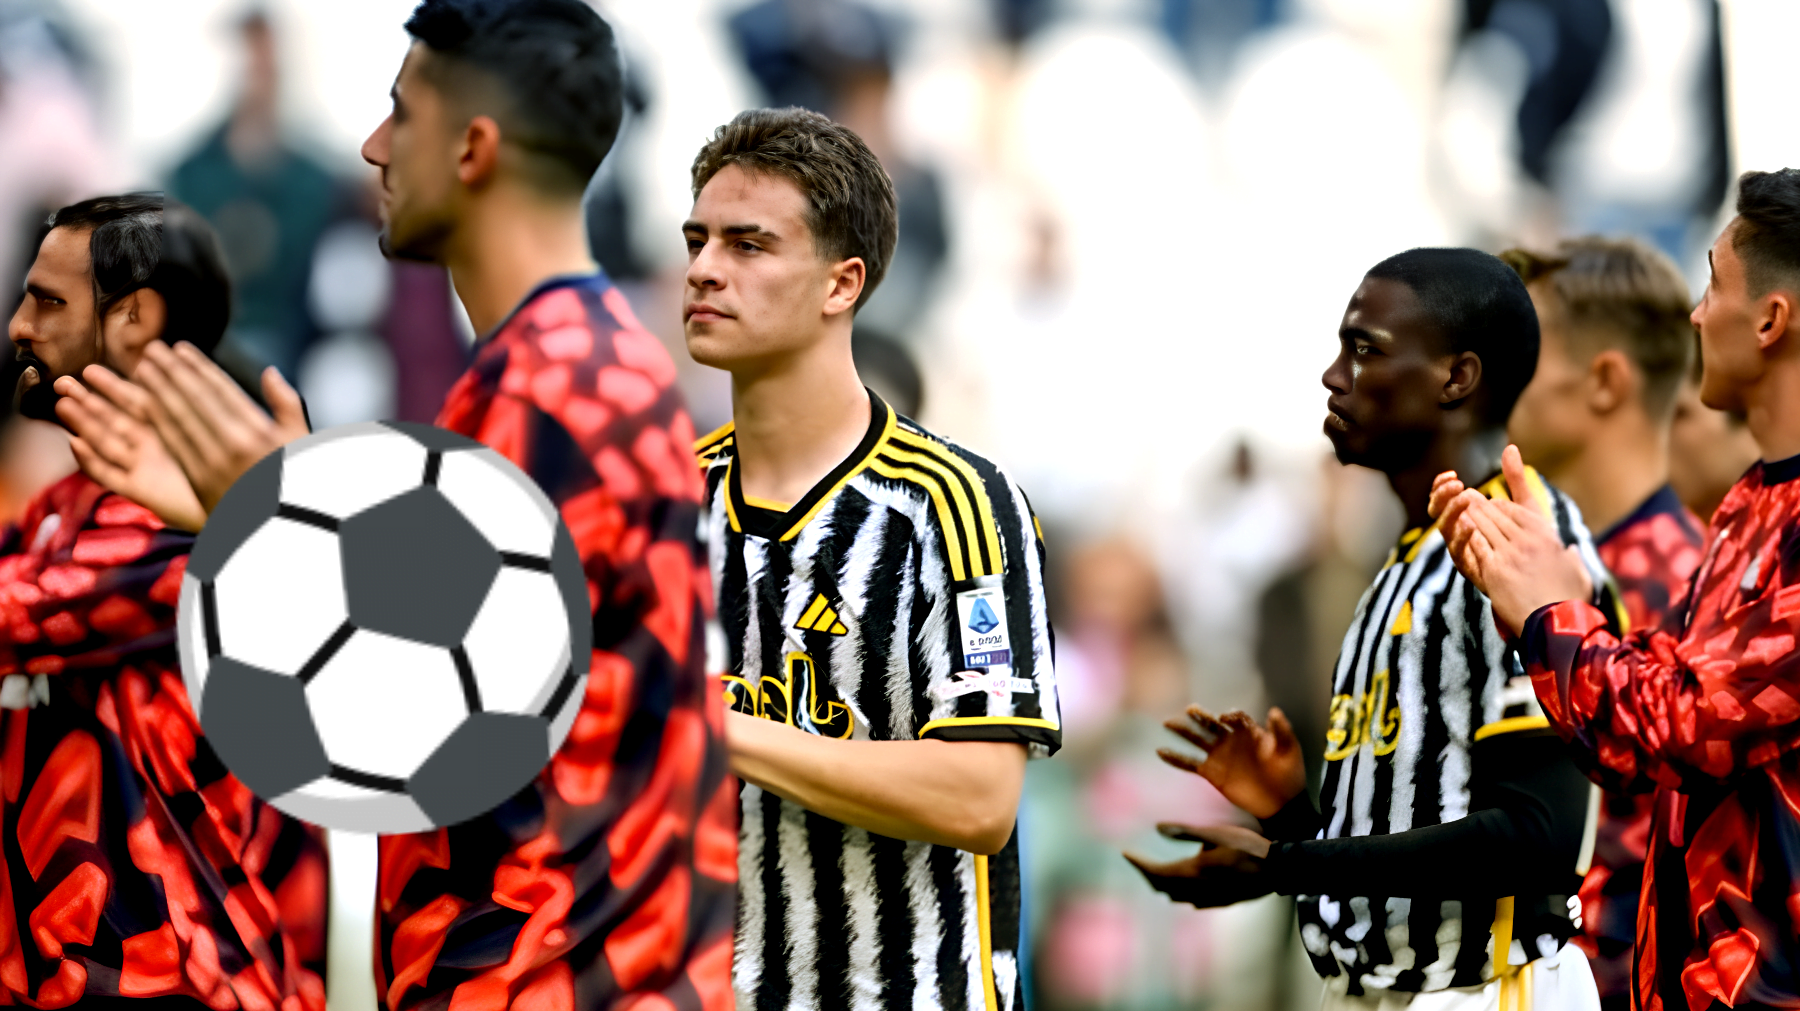 La Juventus contro il Milan: ecco i nomi che potrebbero scendere in campo, c'è qualche sorpresa!